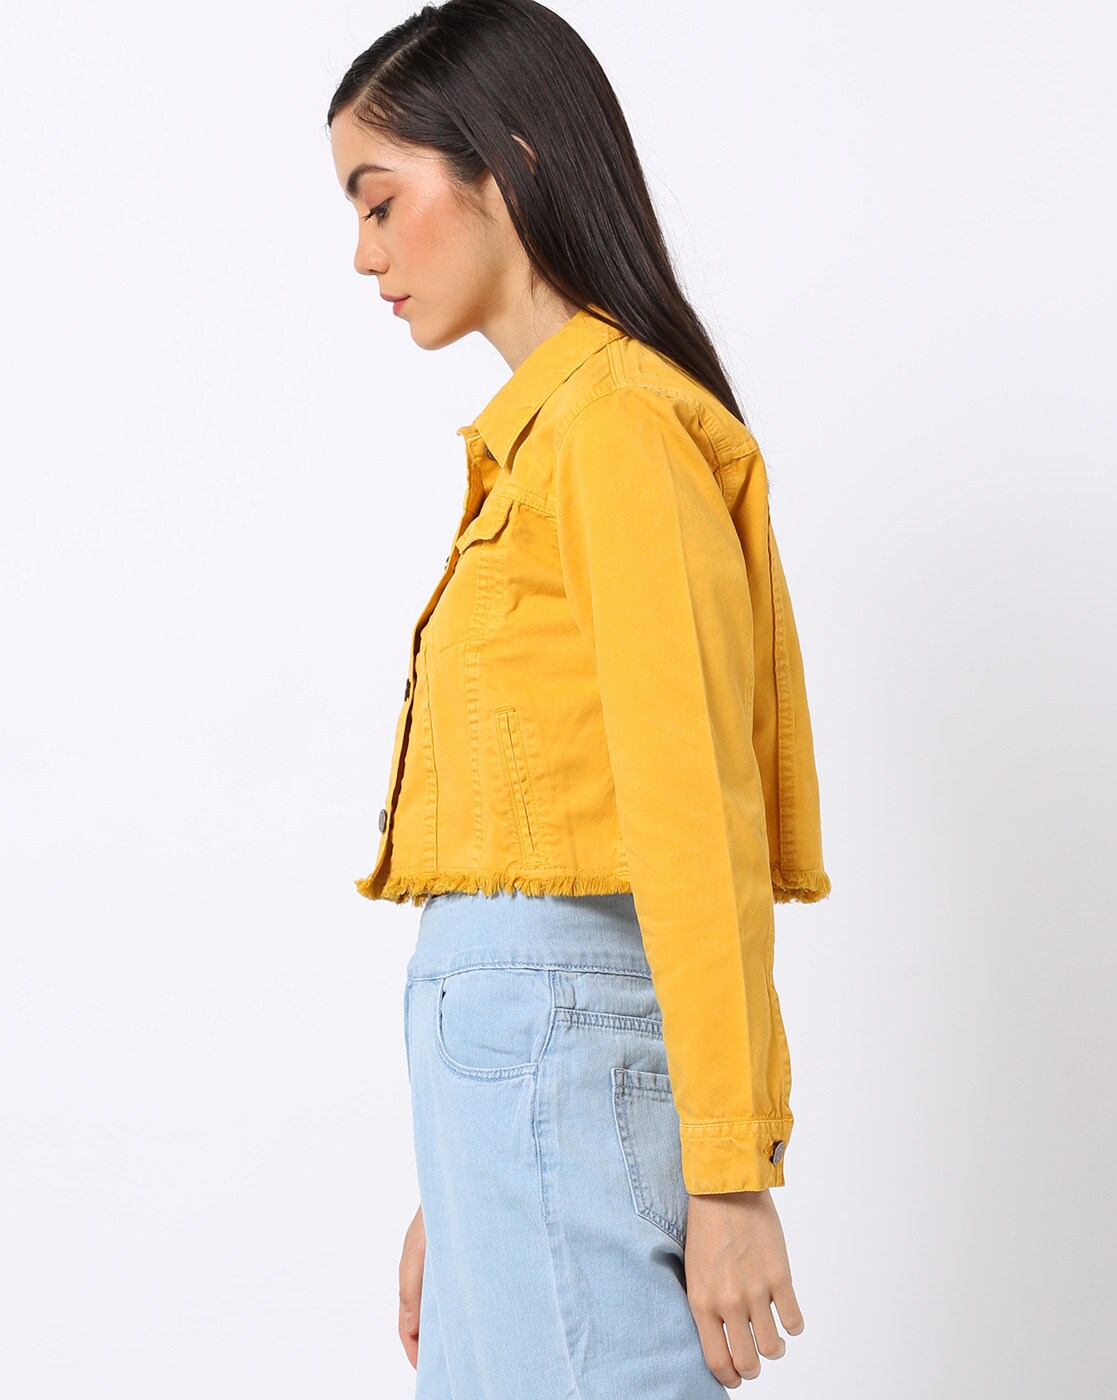 H&M mustard denim oversized jacket Size 16 Worn a... - Depop